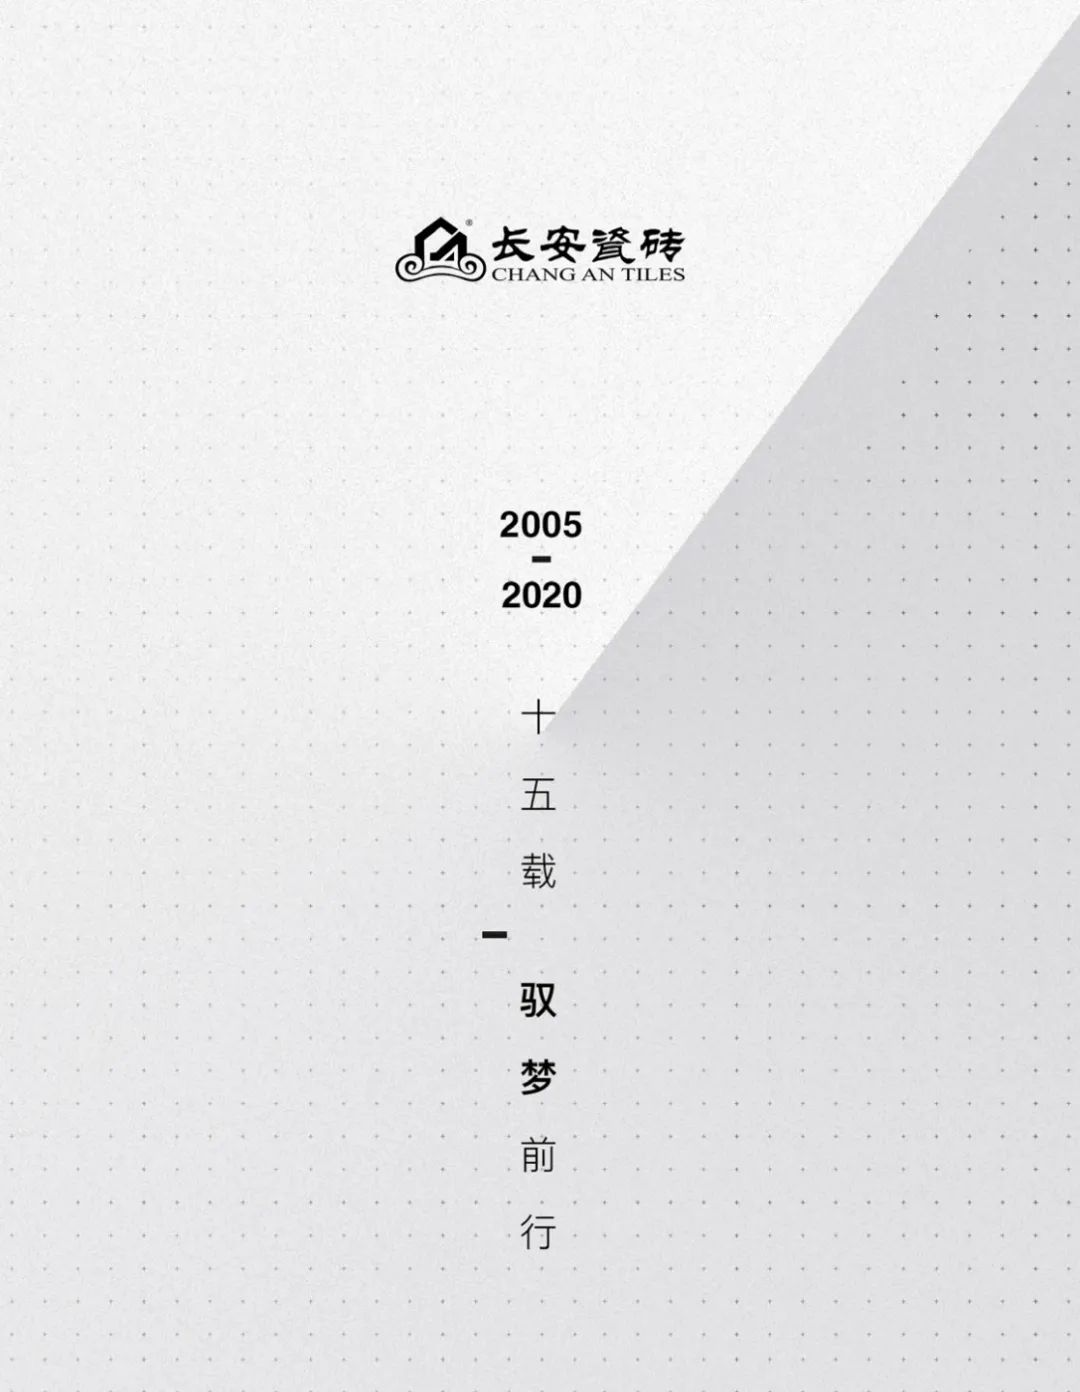 驭梦前行——2020年长安瓷砖邀您共启财富大门(图1)